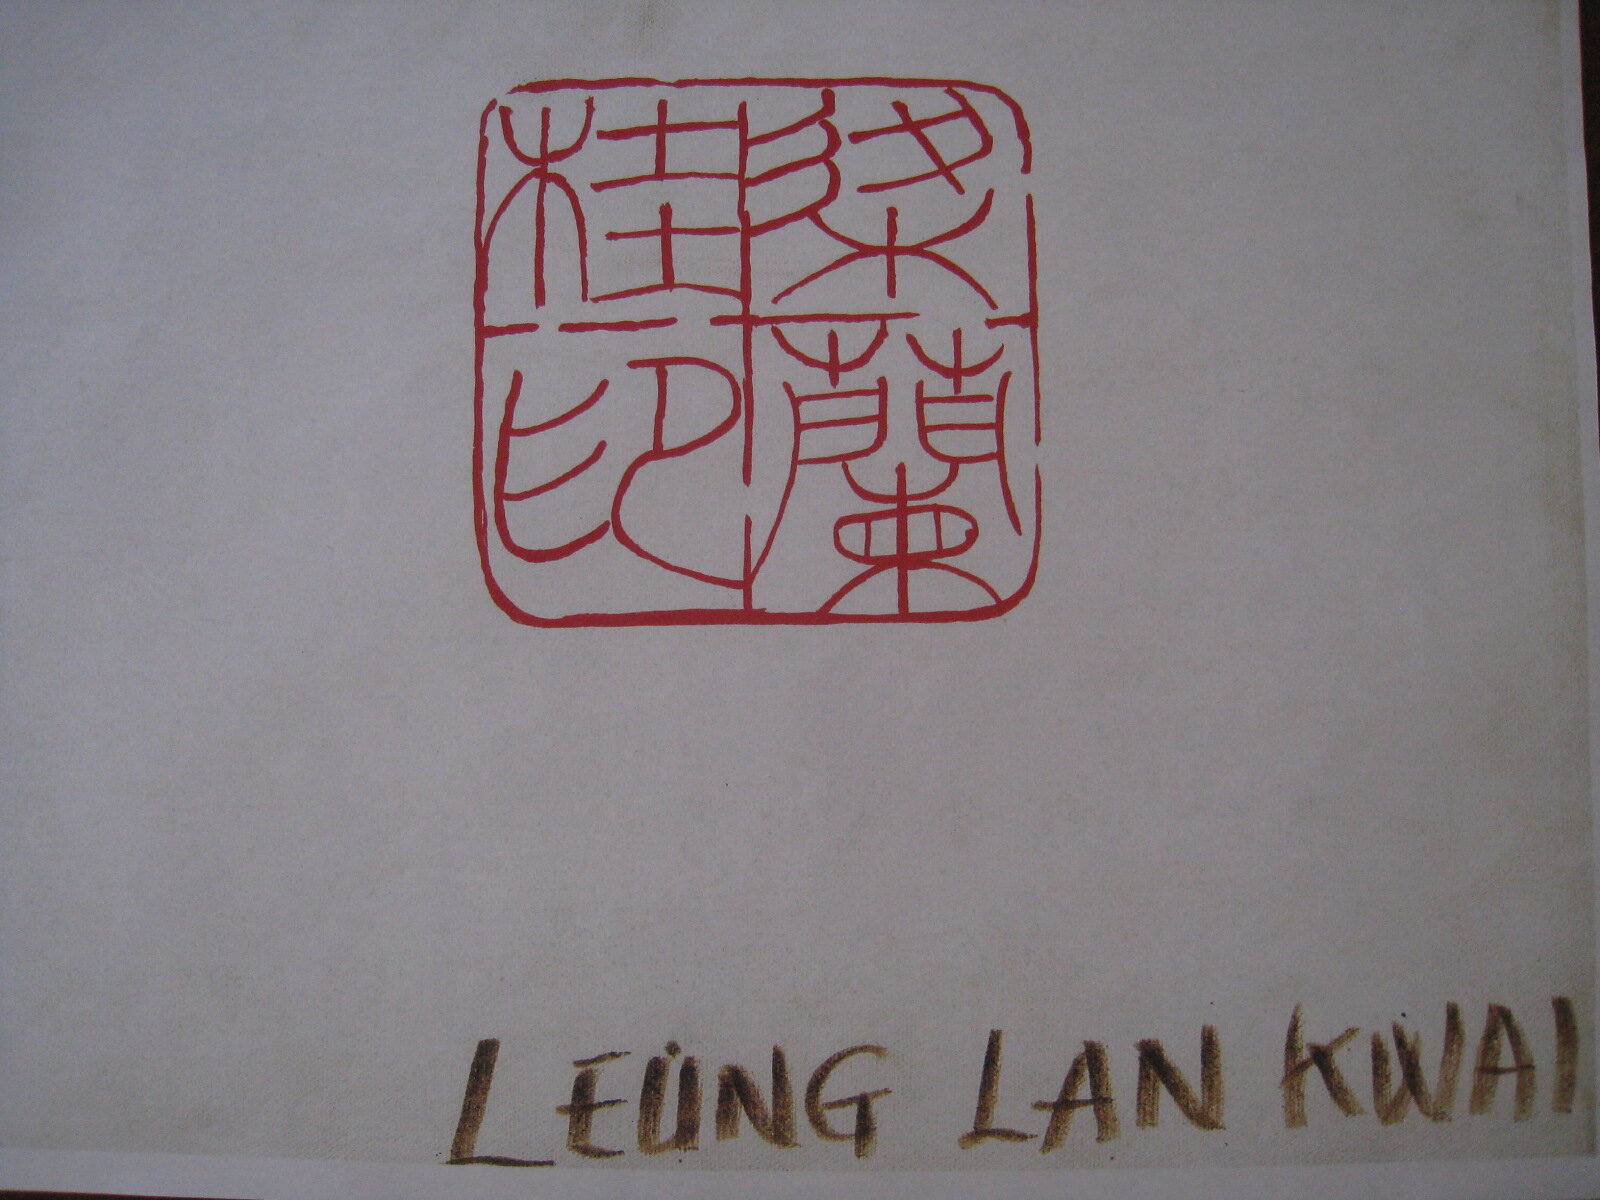 Leung Lan Kwai